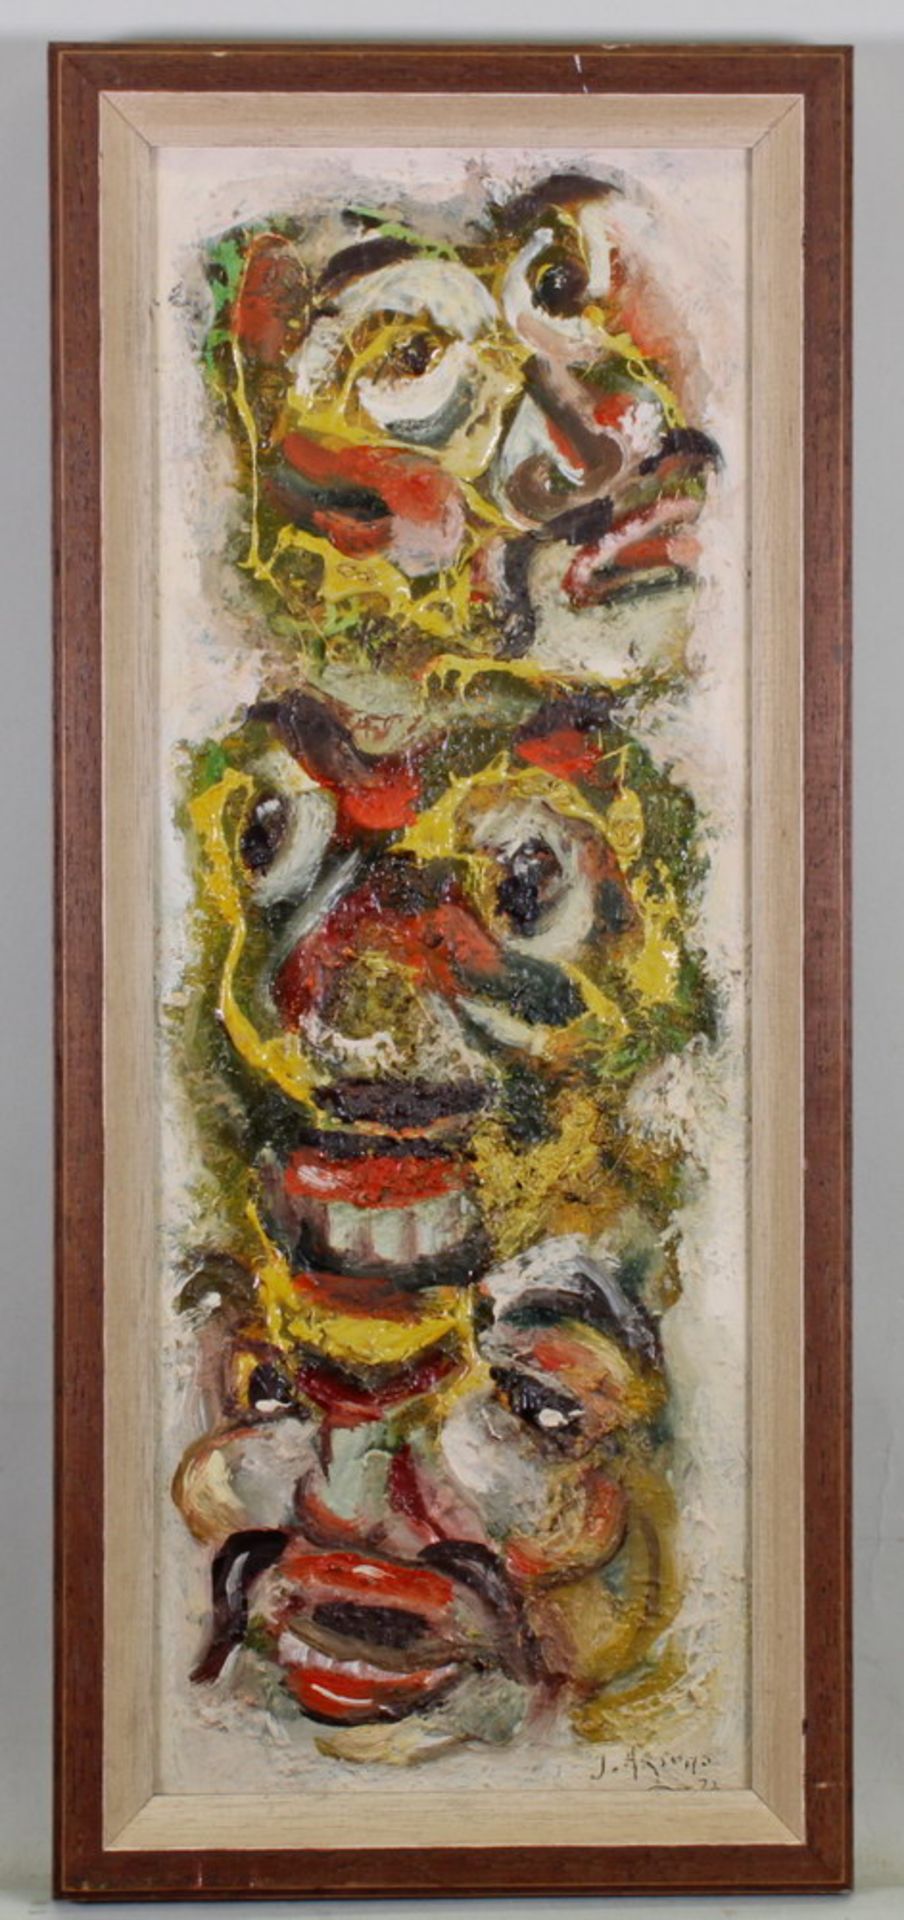 Indonesischer Künstler (um 1970), "Indonesische Tanzmasken", Öl auf Leinwand, unleserlich signiert - Image 2 of 5